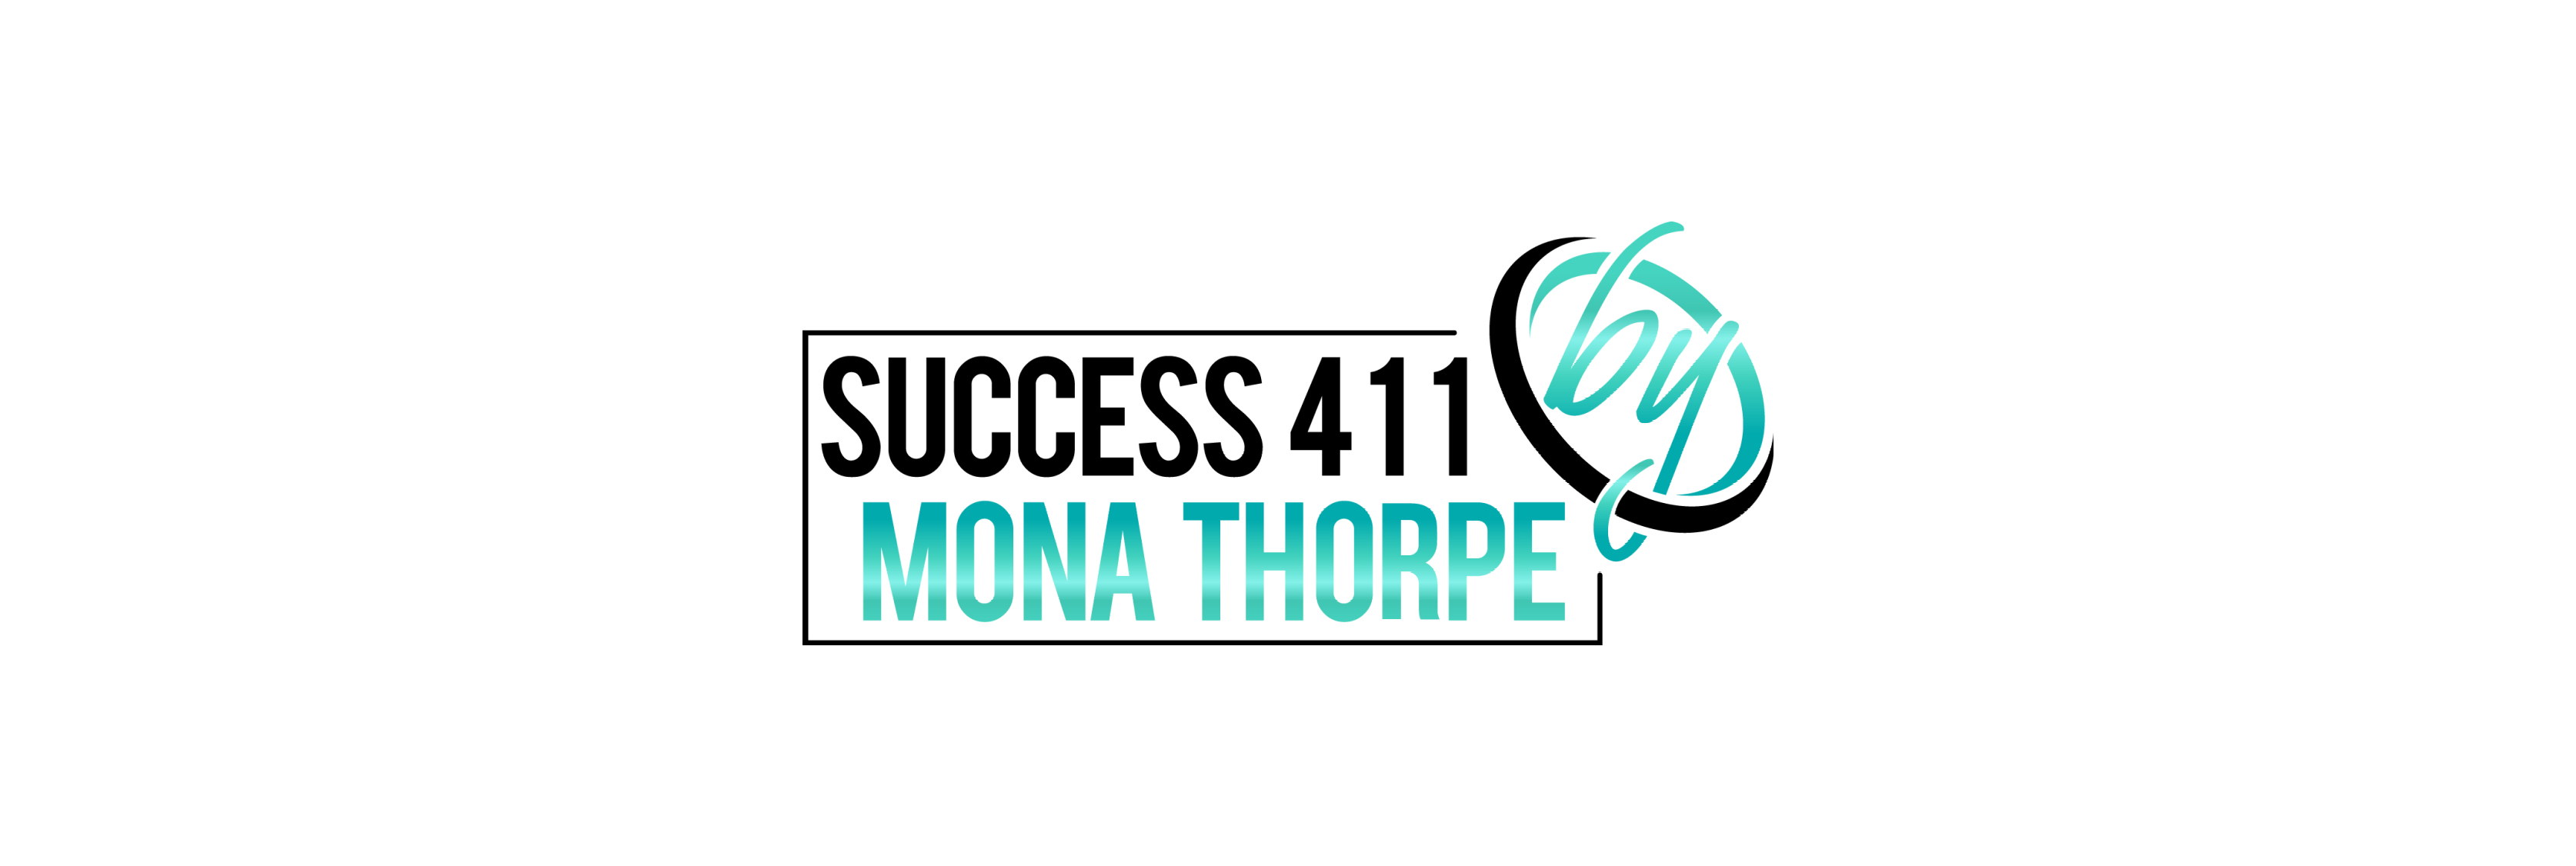 Creating Unbridled Success - Mona Thorpe